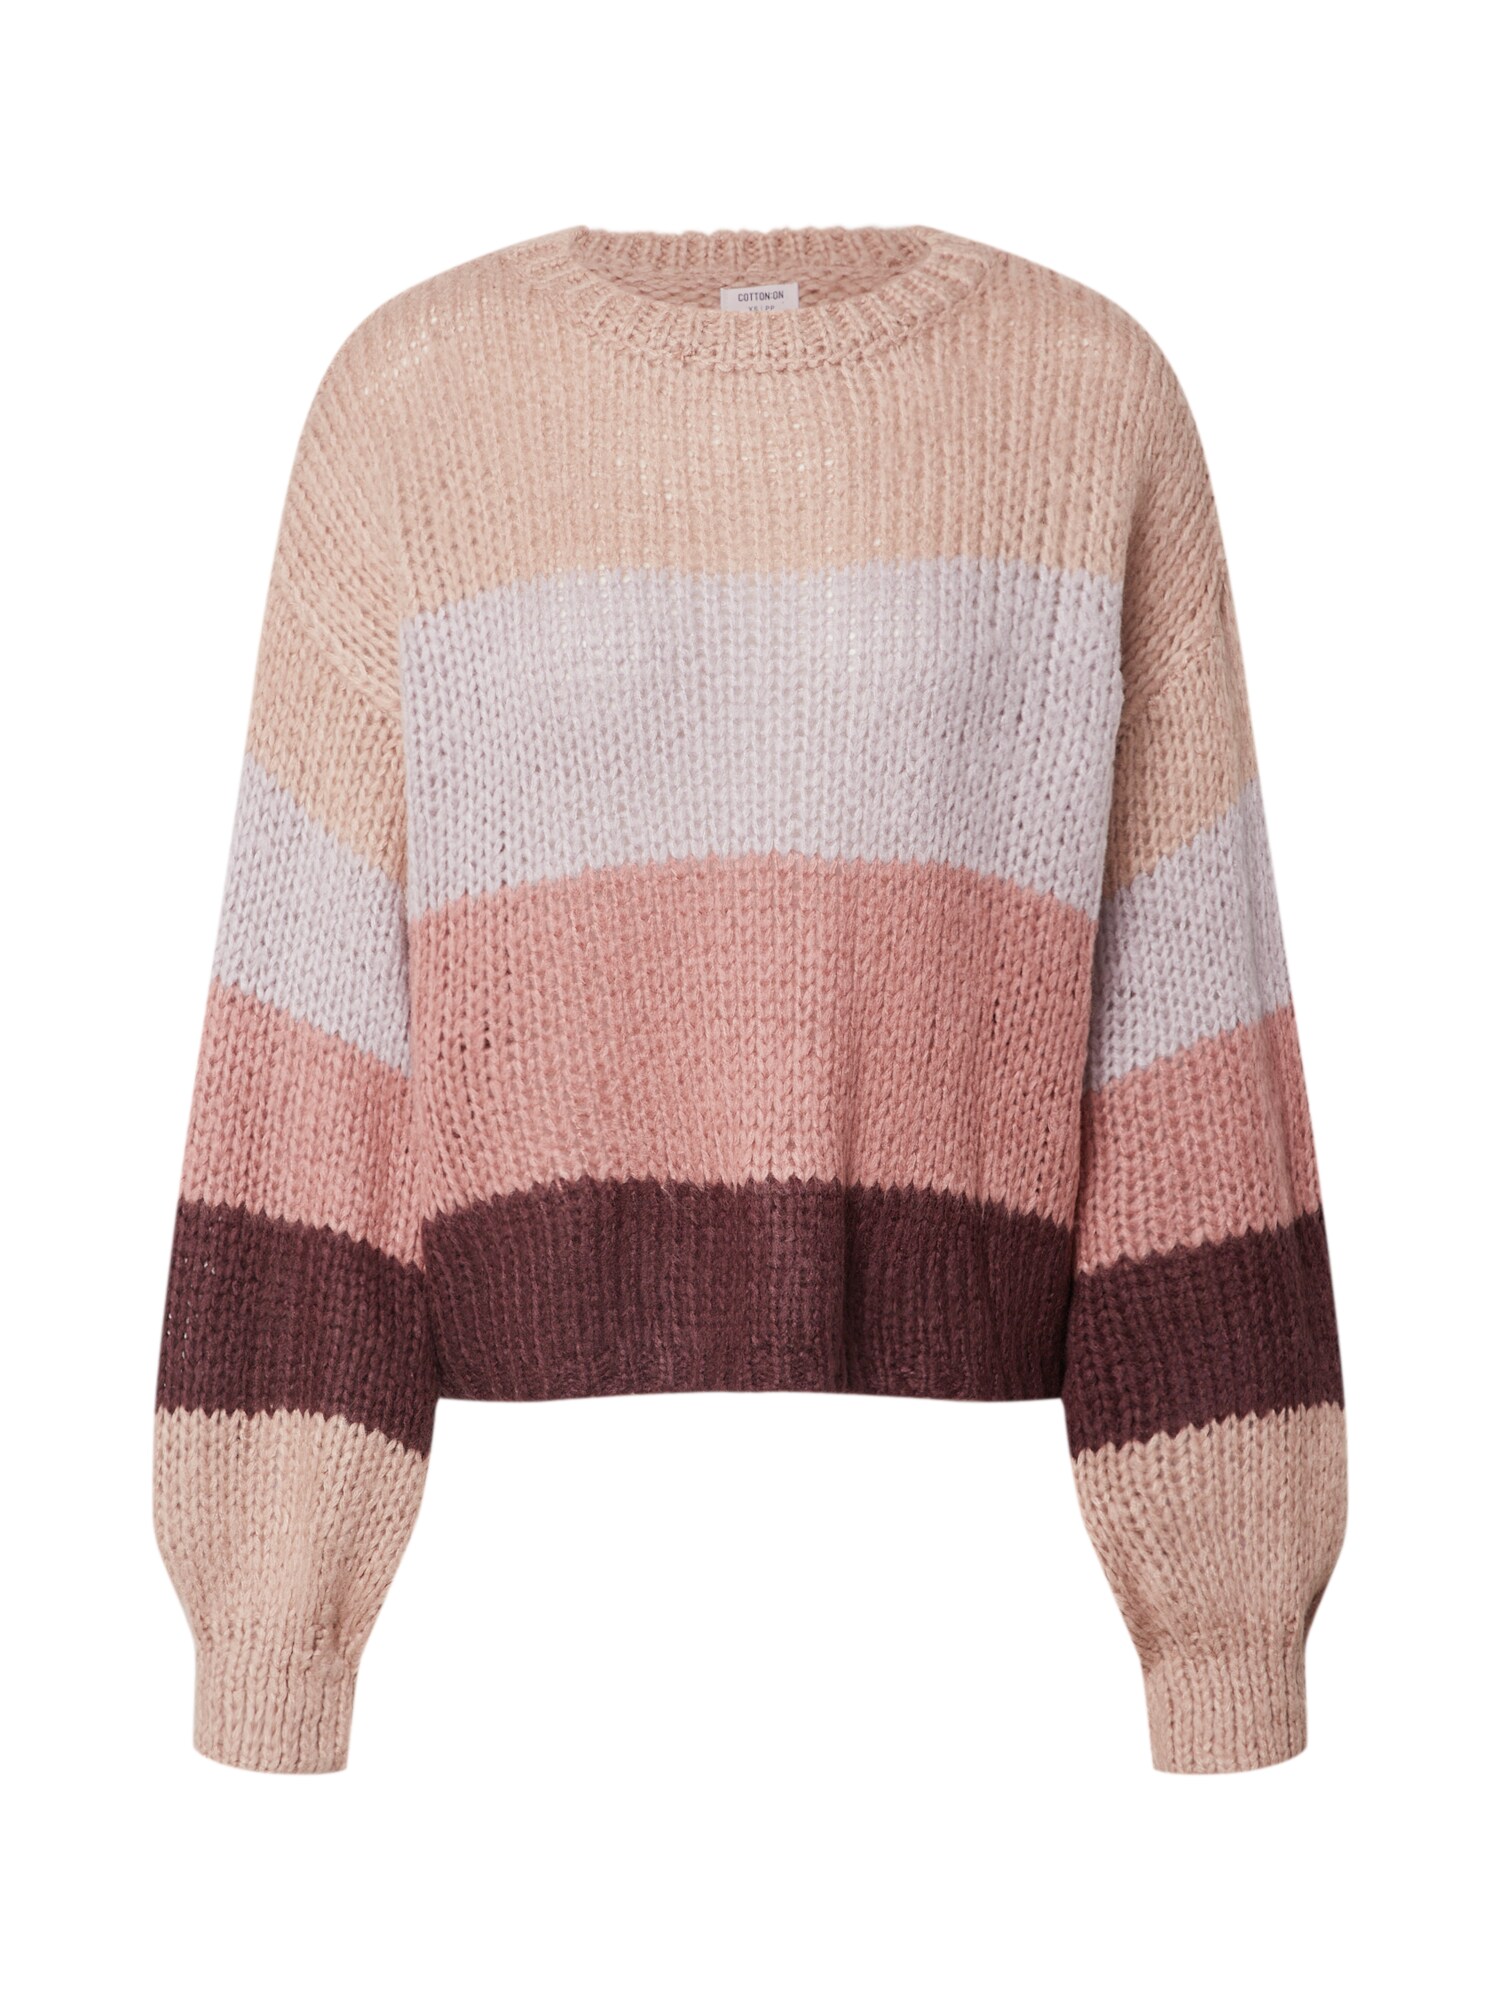 Cotton On Megztinis  ryškiai rožinė spalva / balta / vyno raudona spalva / smėlio